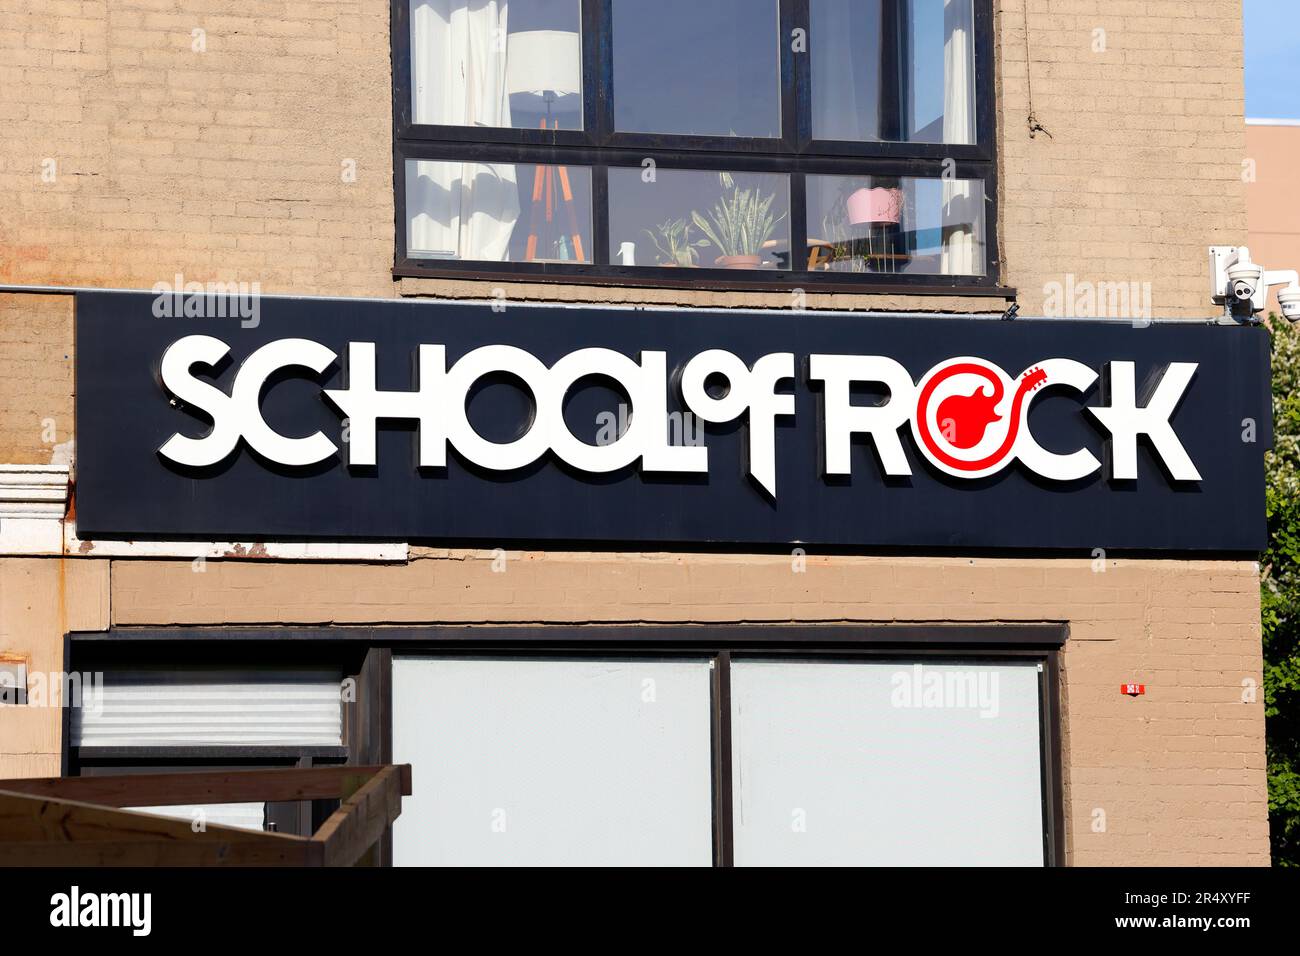 Una señalización de School of Rock en una ubicación de franquicia en Brooklyn, Nueva York. La Escuela de Rock es un programa de música para todas las edades. Foto de stock